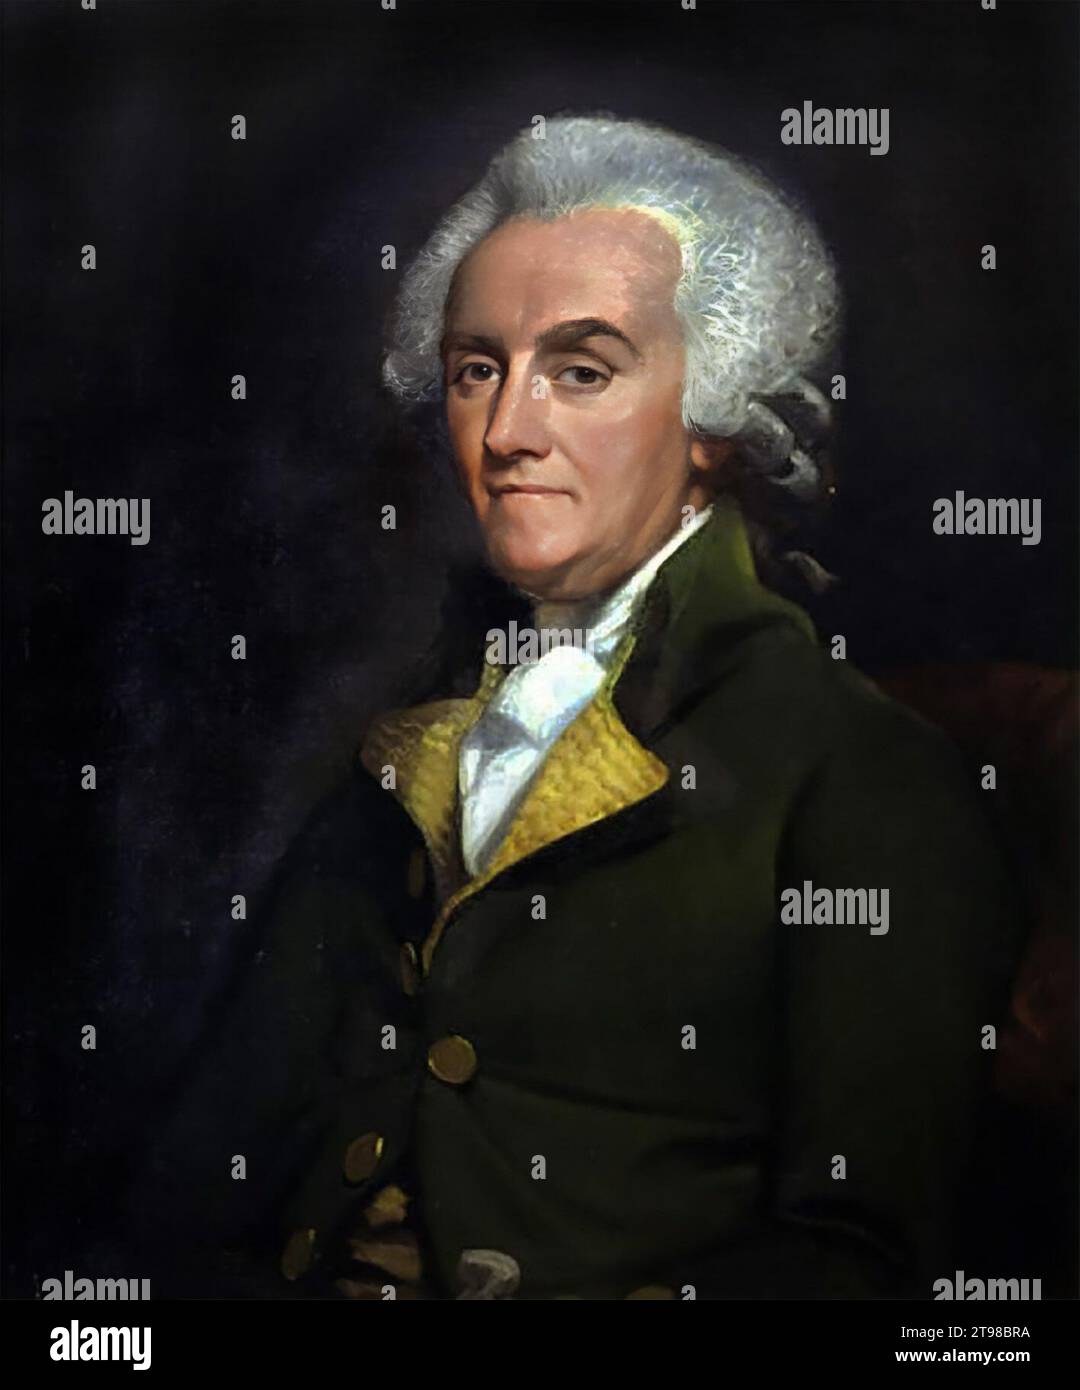 William Franklin. Ritratto del procuratore e politico americano, William Franklin (1730-1813), attribuito a Mather Brown, olio su tela, c. 1790 Foto Stock